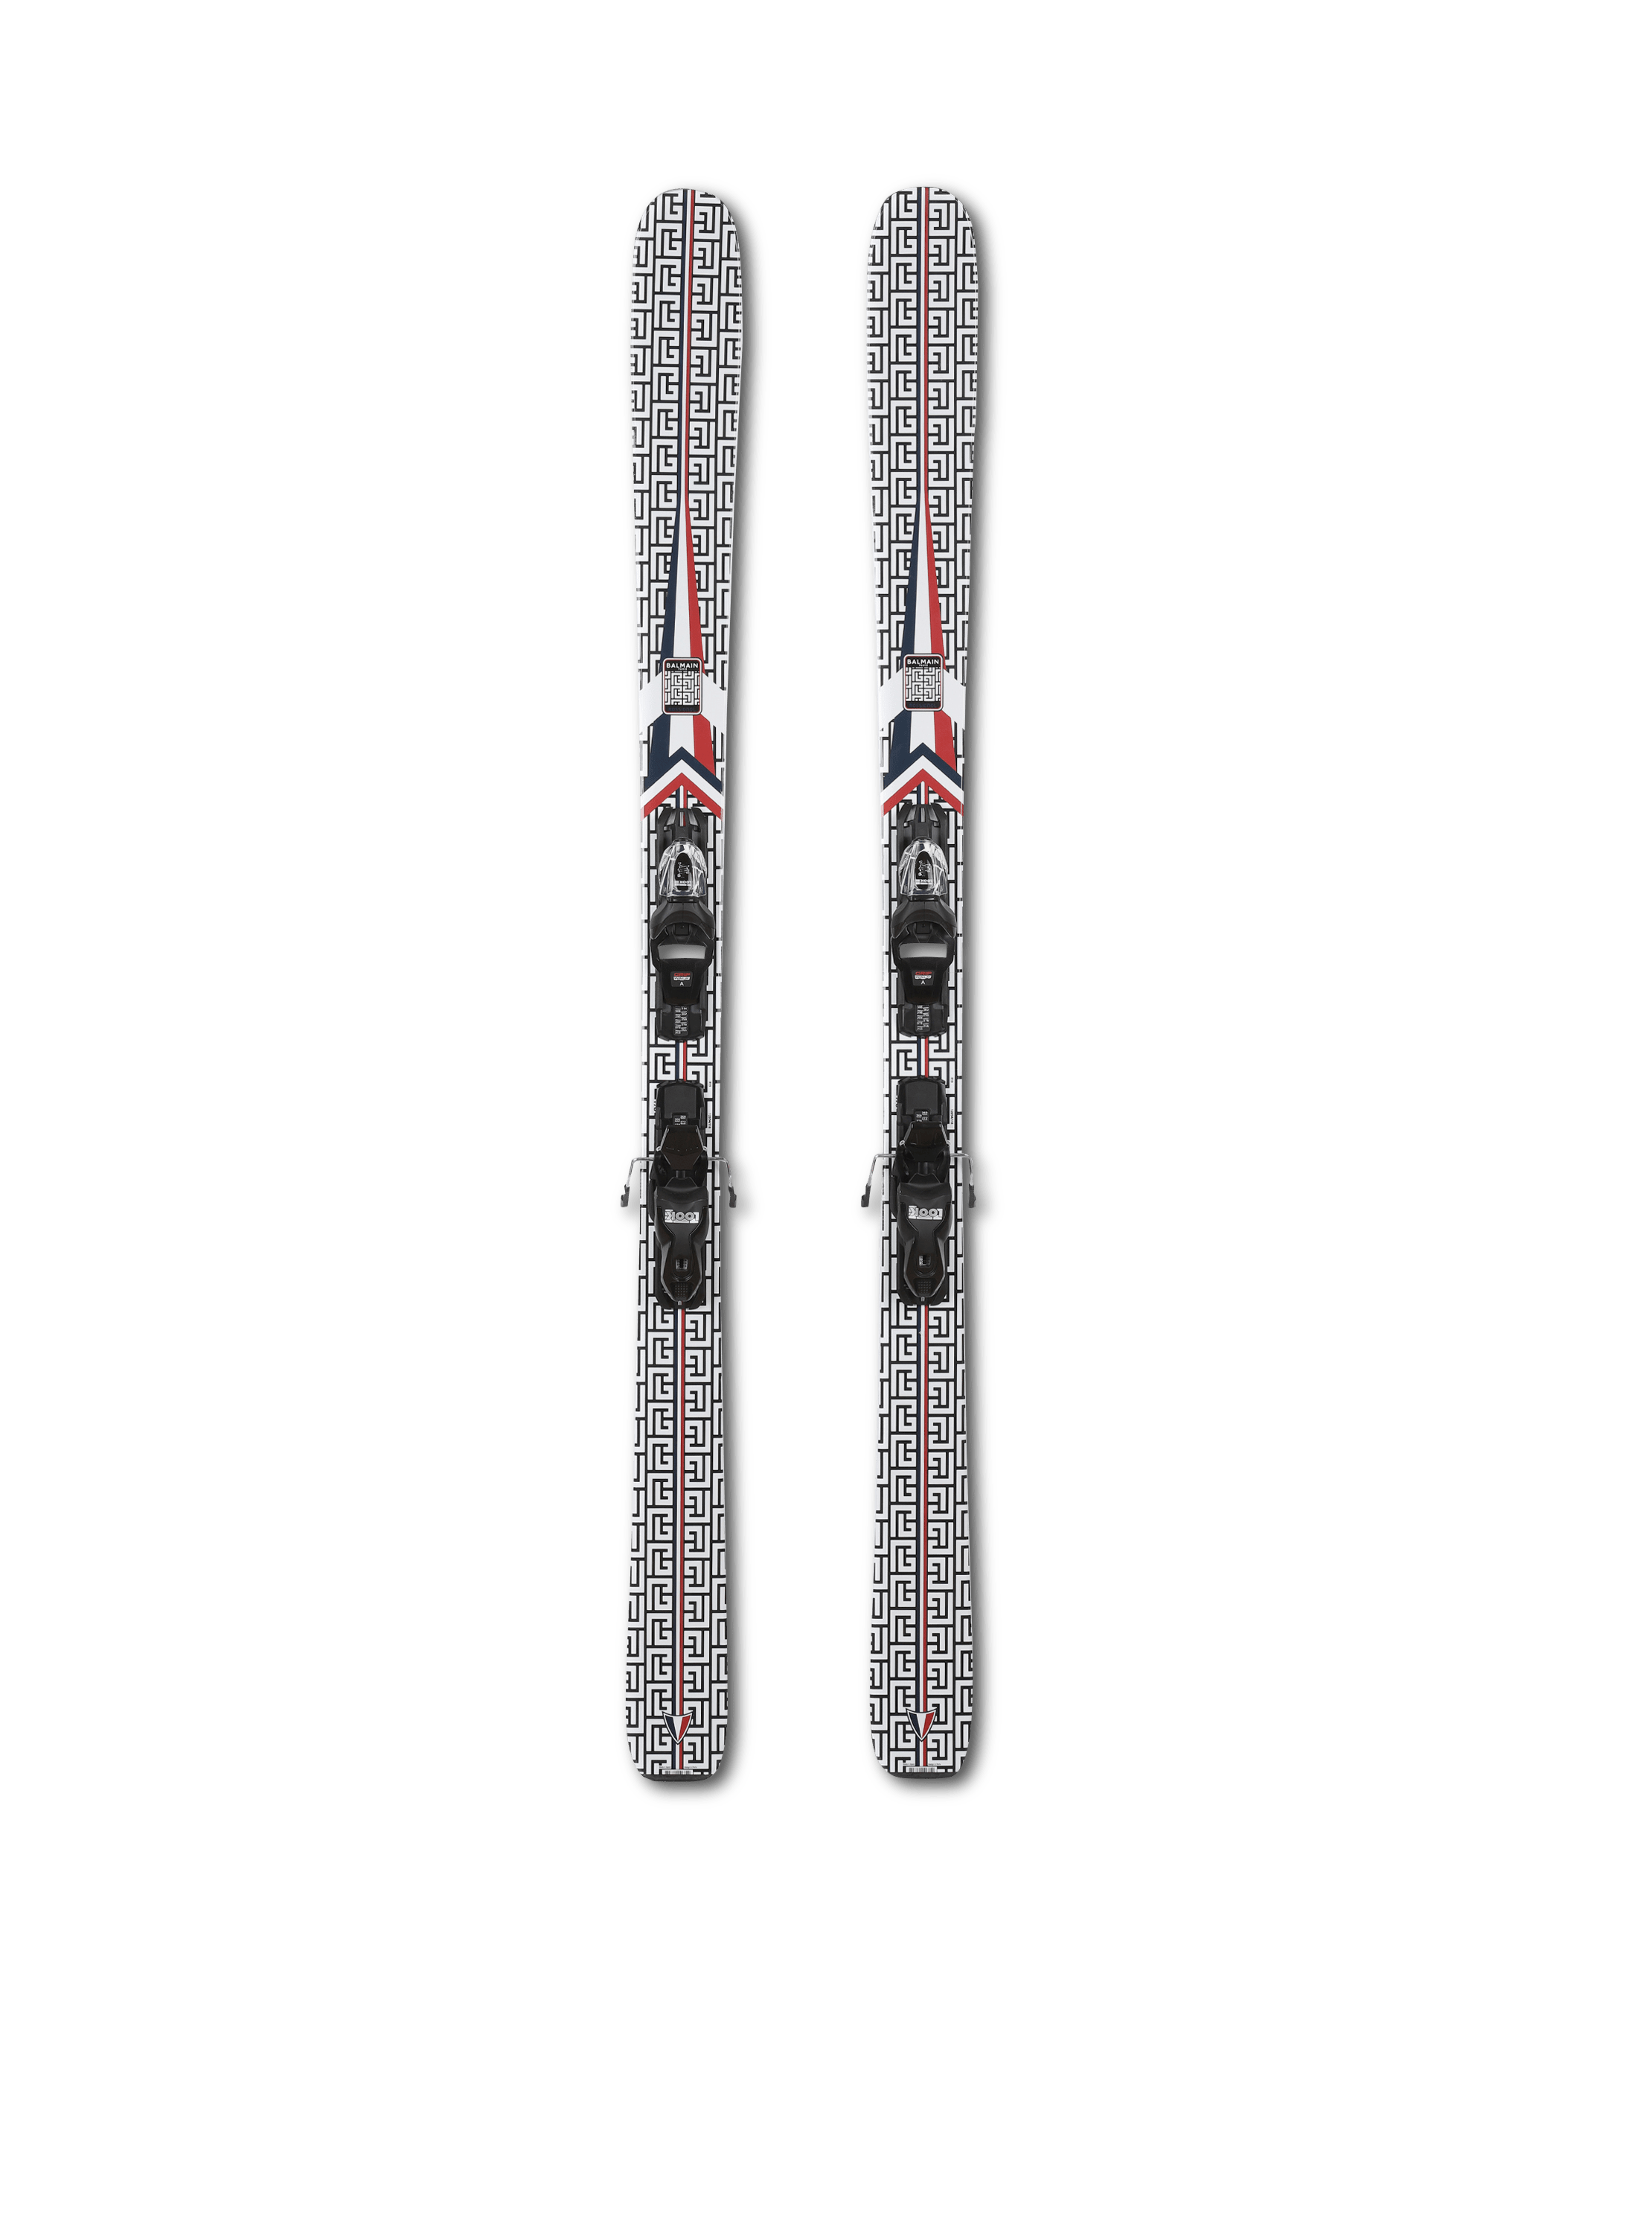 Balmain x Rossignol - Pareja de esquís Rossignol de madera con motivo de monograma de Balmain